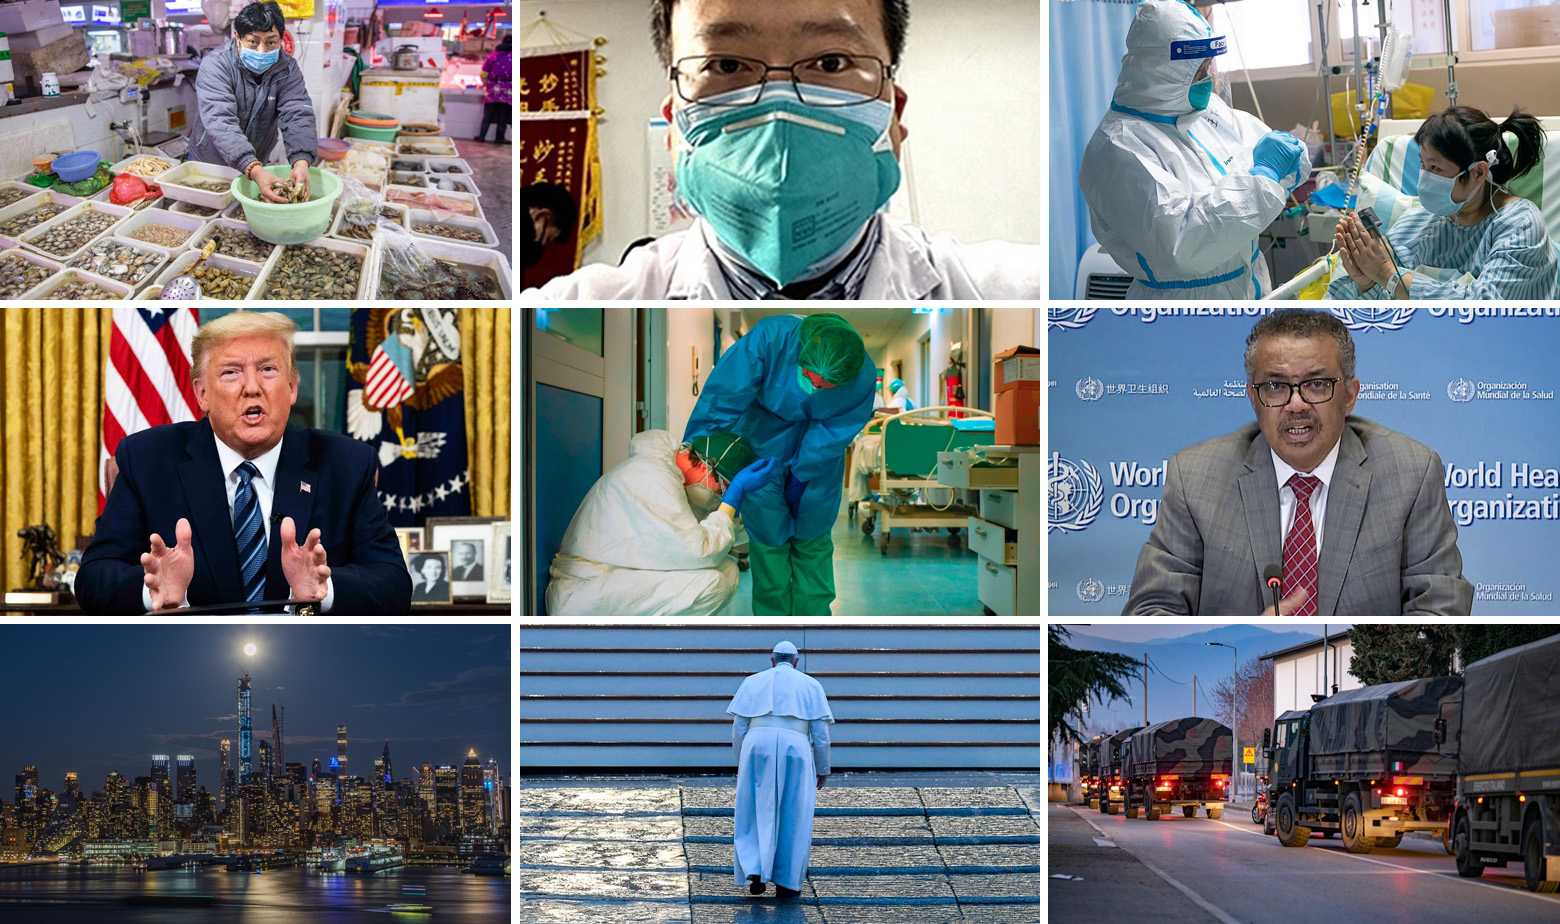 Pamtljivi prizori tijekom globalne pandemije koronavirusa, na slici Li Wenliang (gore u sredini), Donald Trump (lijevo), Tedros Adhanom Ghebreyesus (desno) i papa Franjo (dolje)